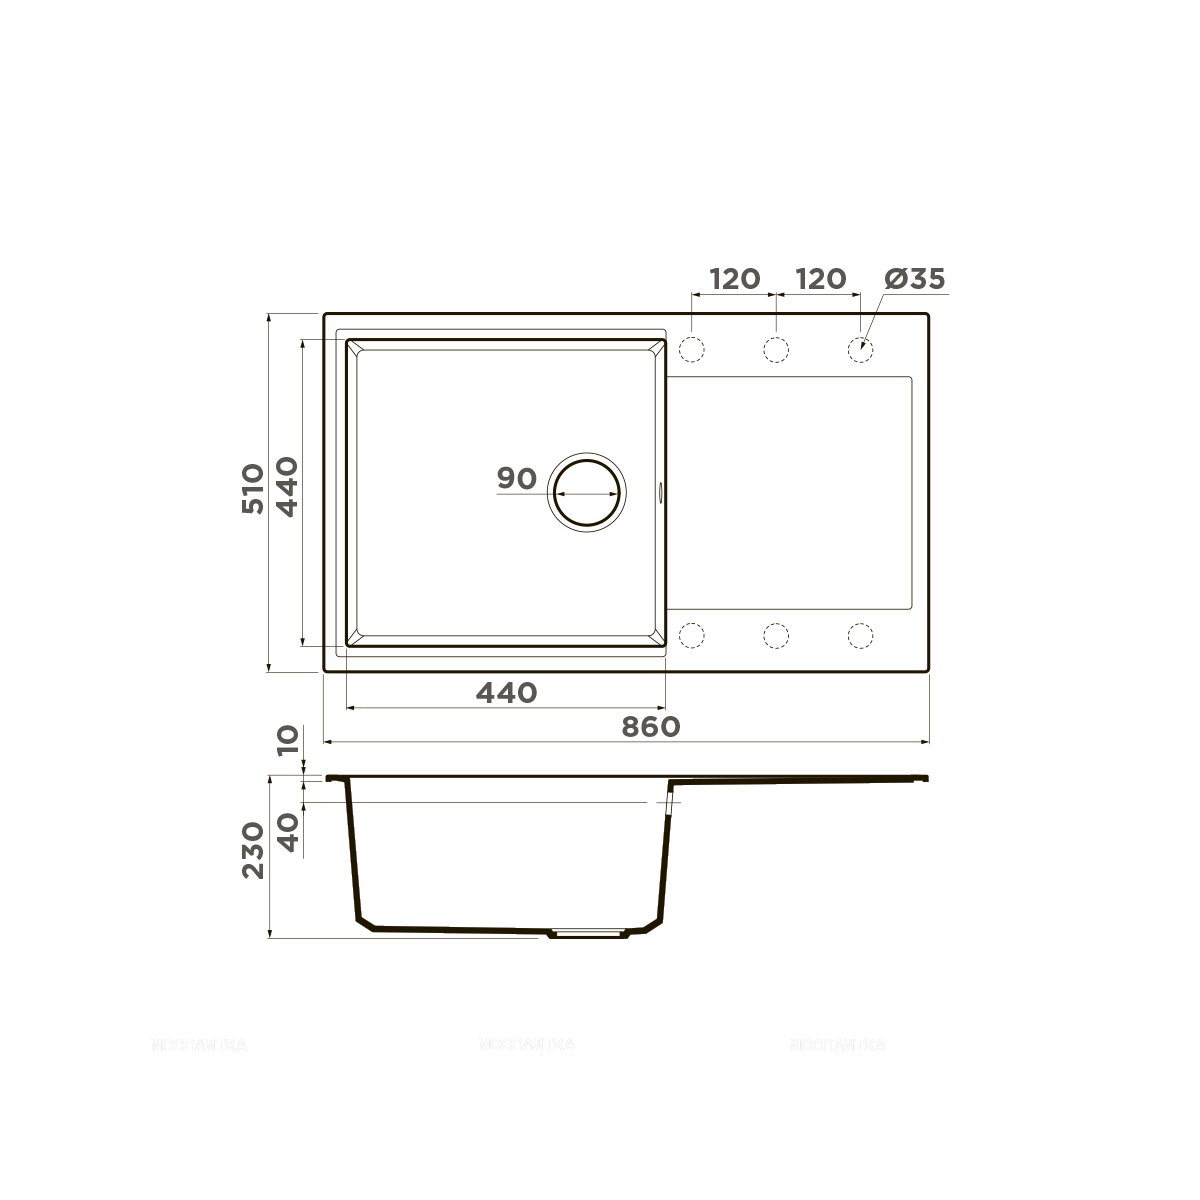 Кухонная мойка Omoikiri Daisen 86-GR leningrad grey, 4993698 - изображение 2